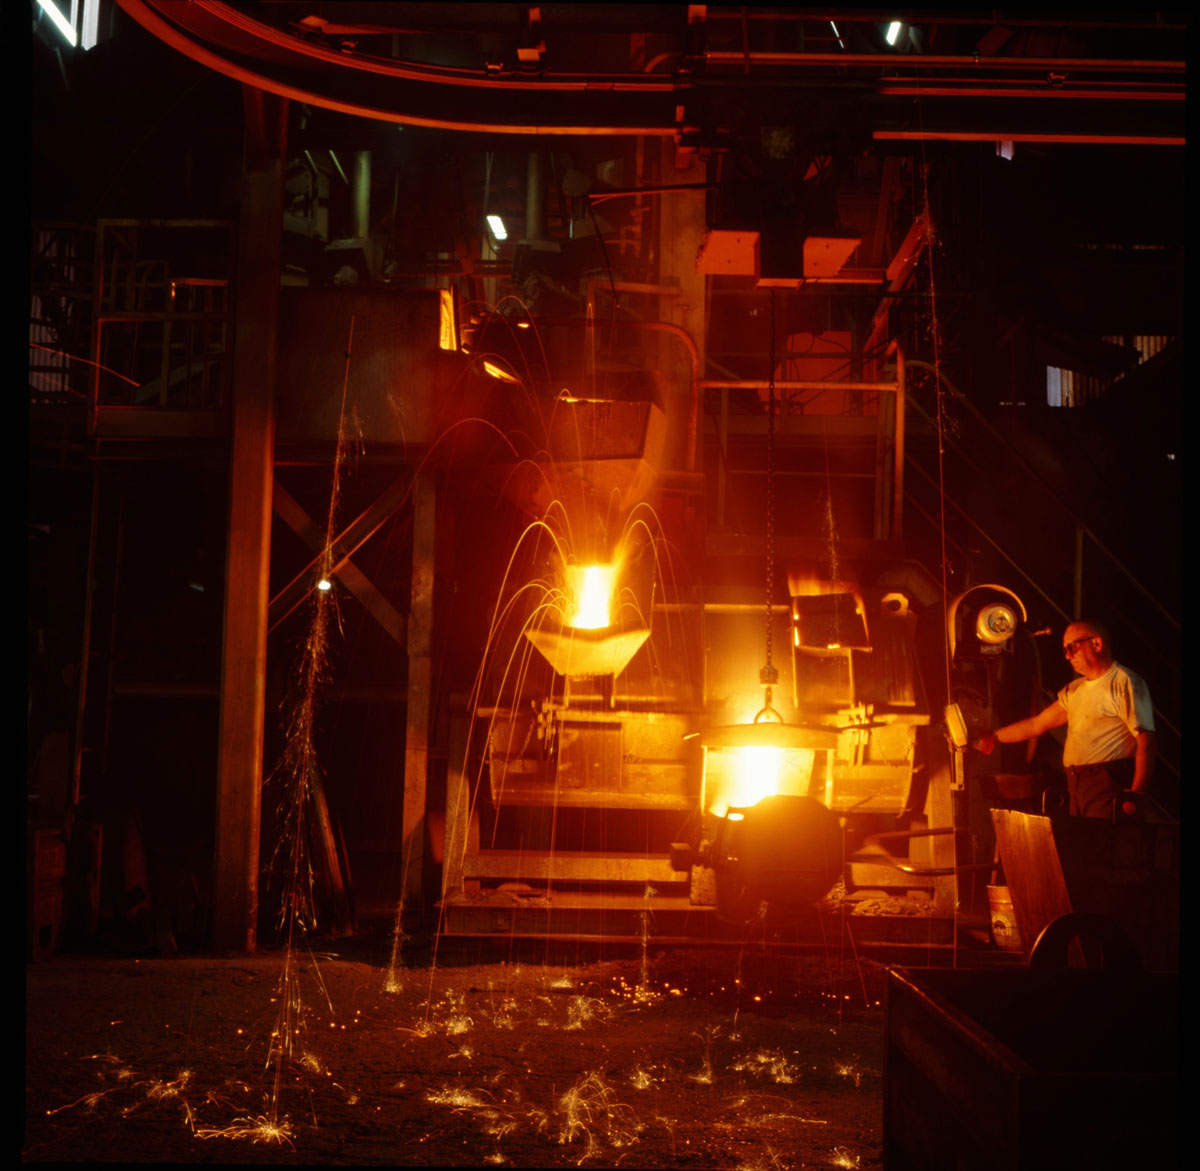 La photographie montre une coulée de fonte dans l'usine Godin SA.